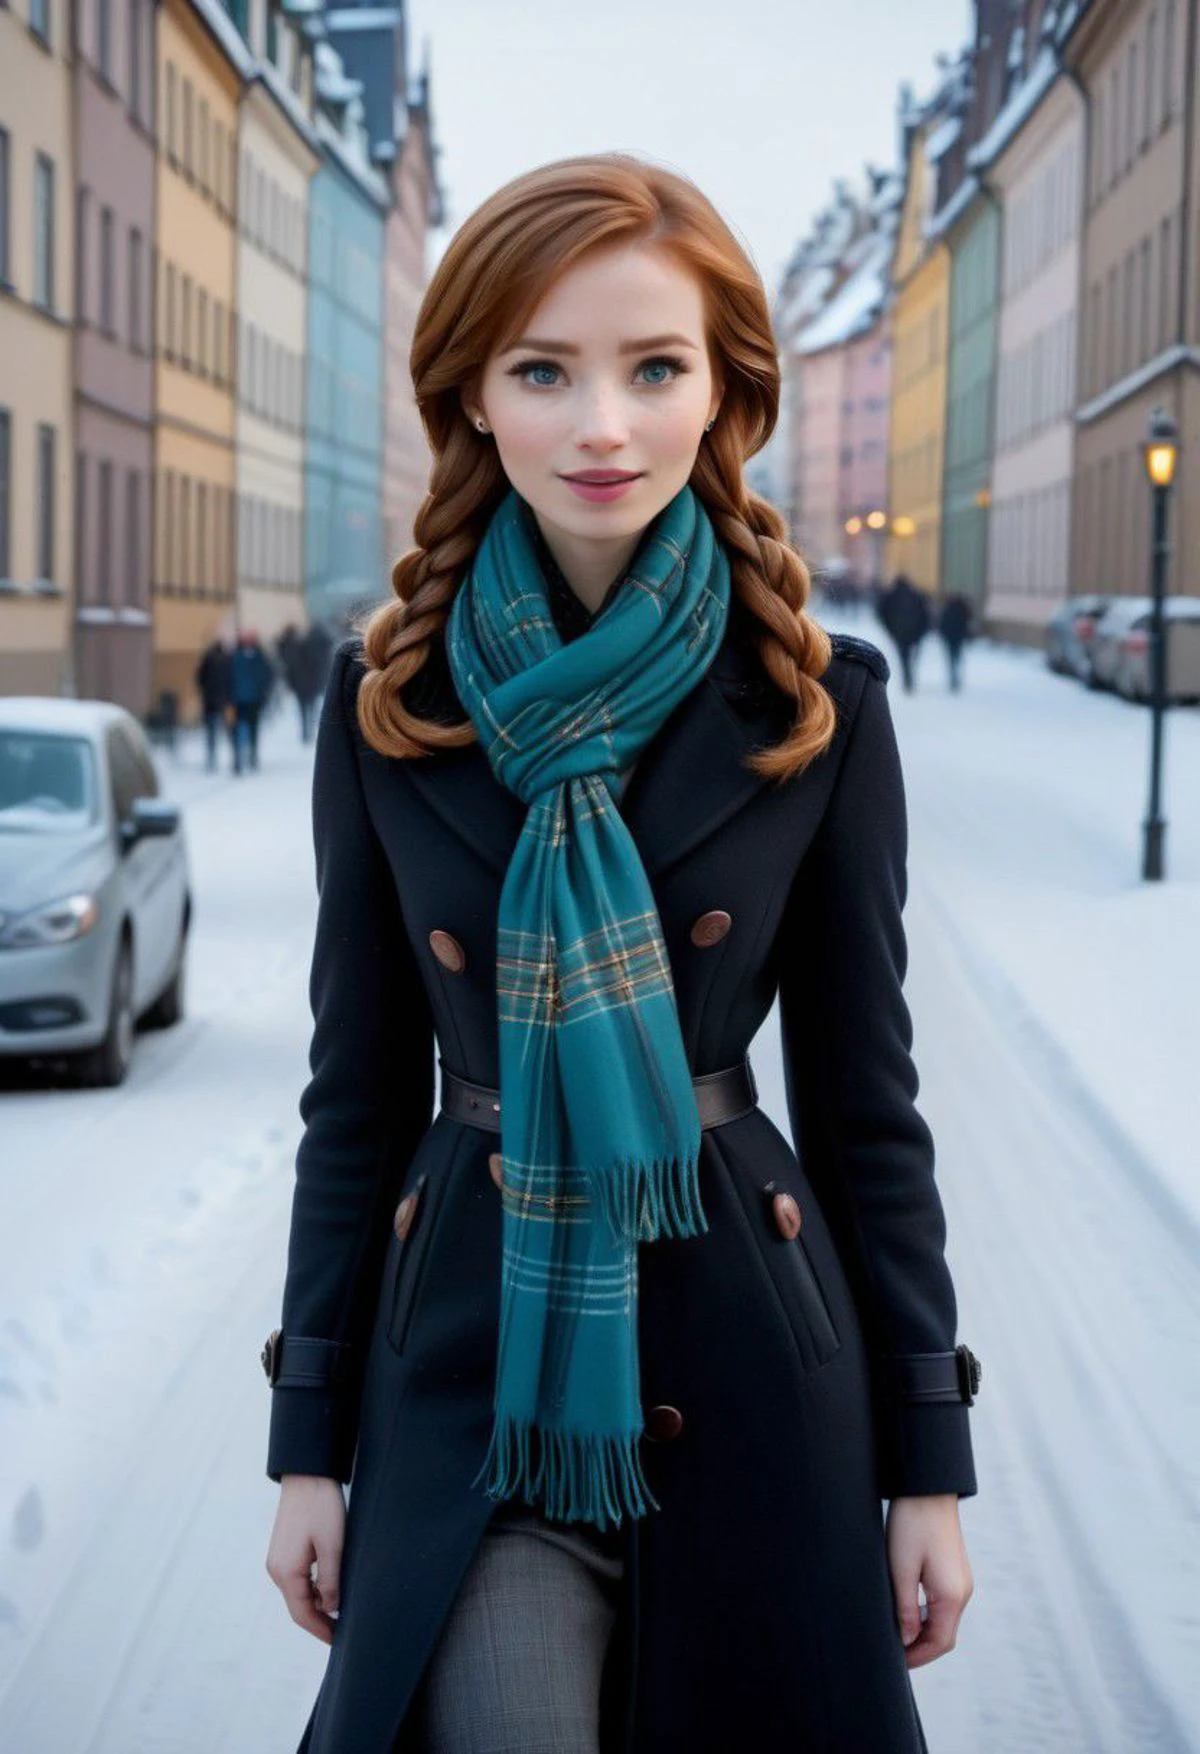 ultra realista,  anna, esbelto, elegante bufanda escocesa, coqueto, caminando por calles nevadas en Estocolmo